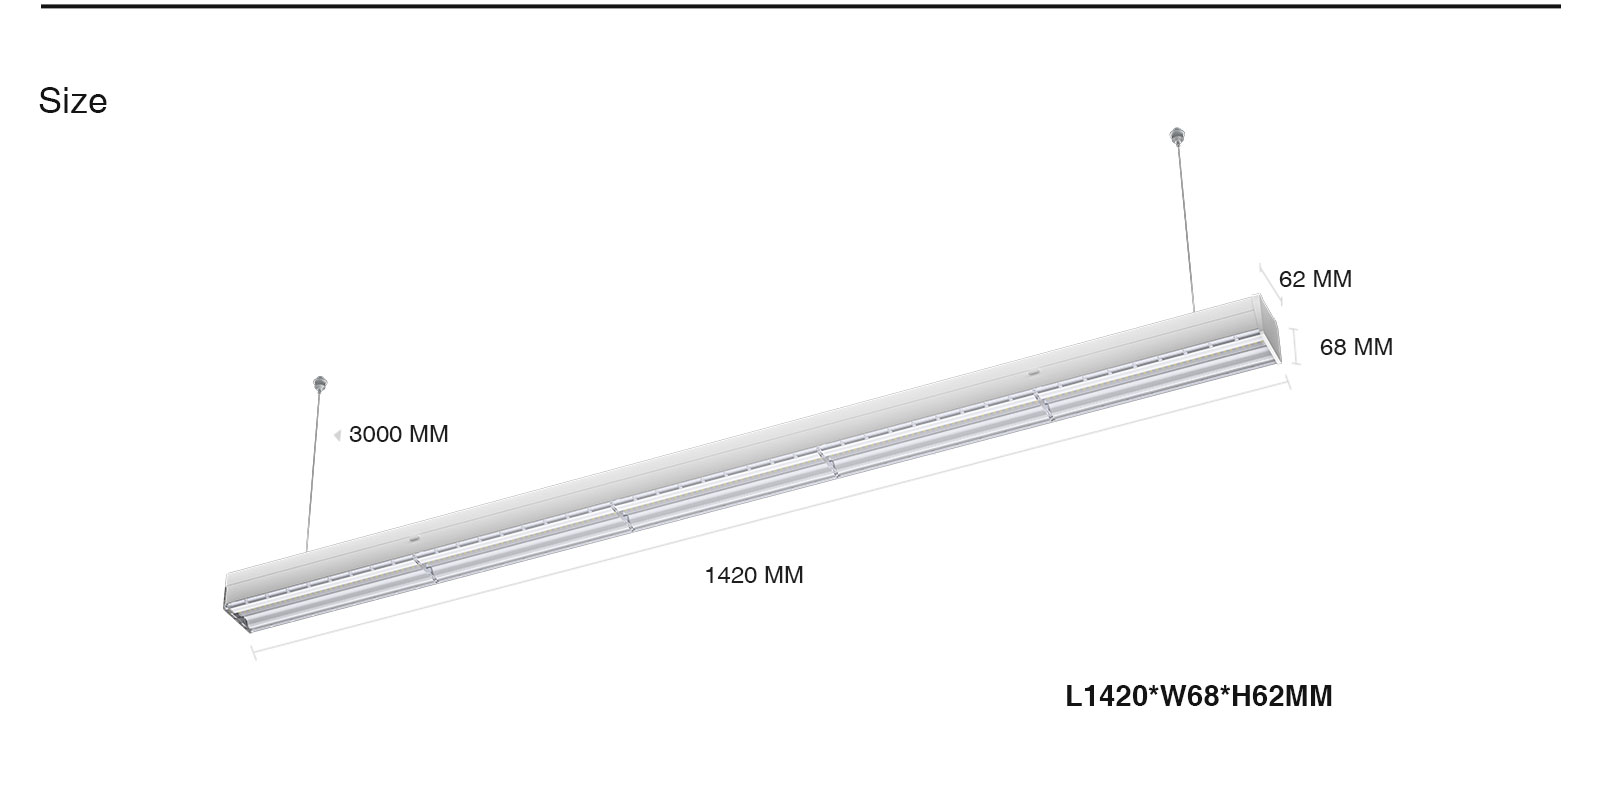 MLL002-A Canalina a 5 fili per luci lineari a LED 5 anni di garanzia-Luci lineari--ML00203